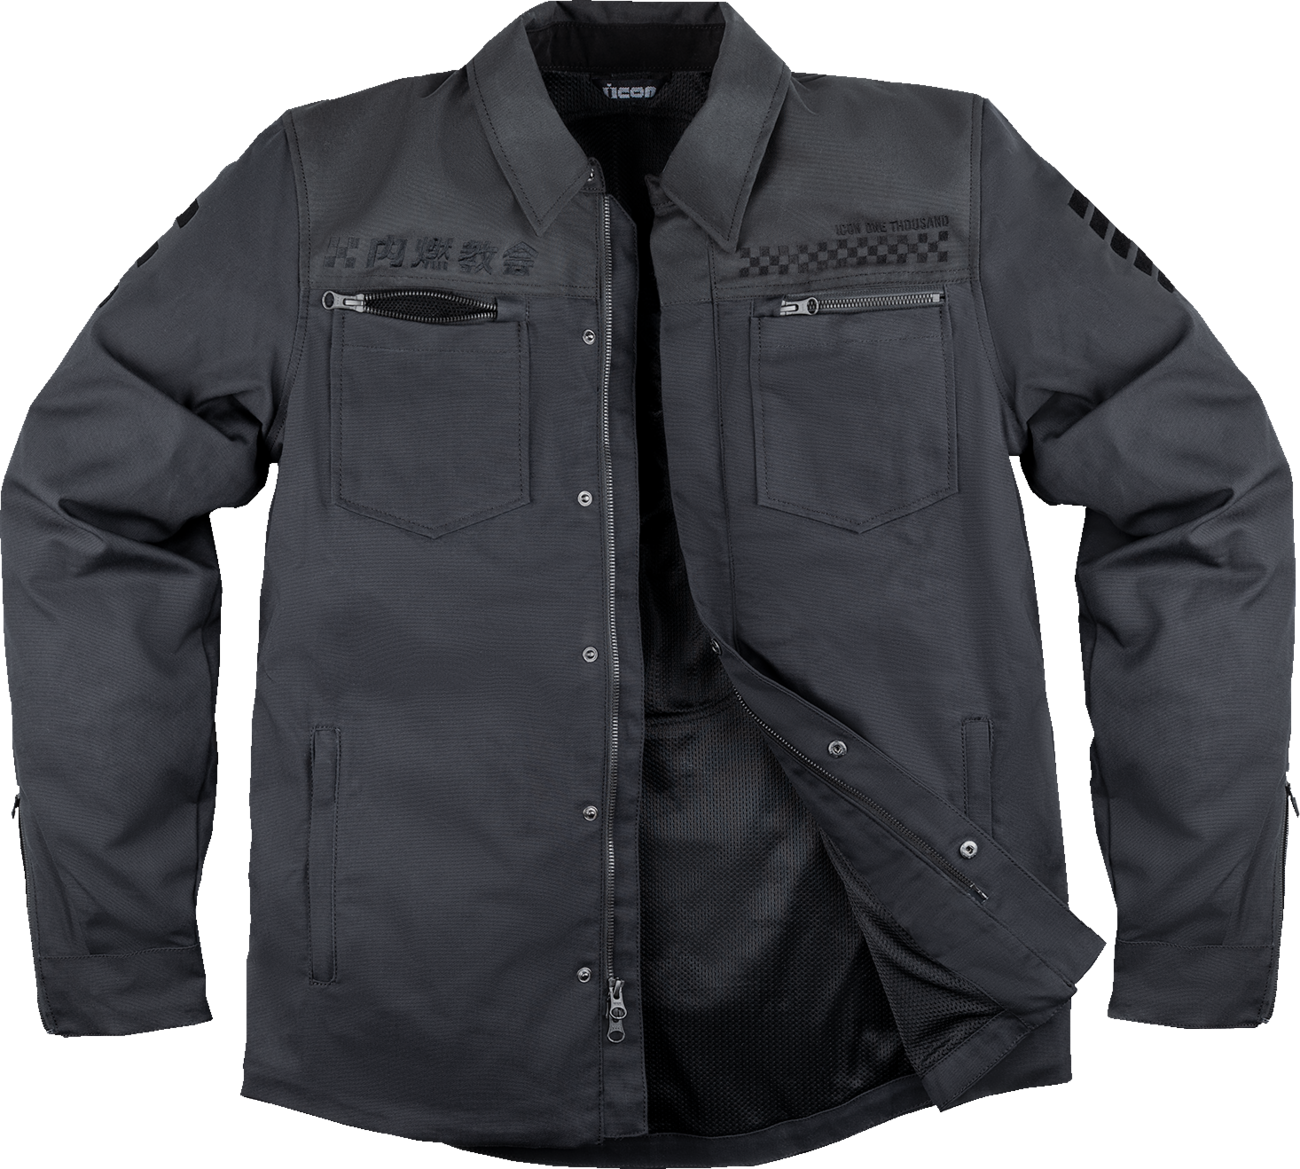 ICON Upstate Canvas National Jacket - Black - Large 2820-6562